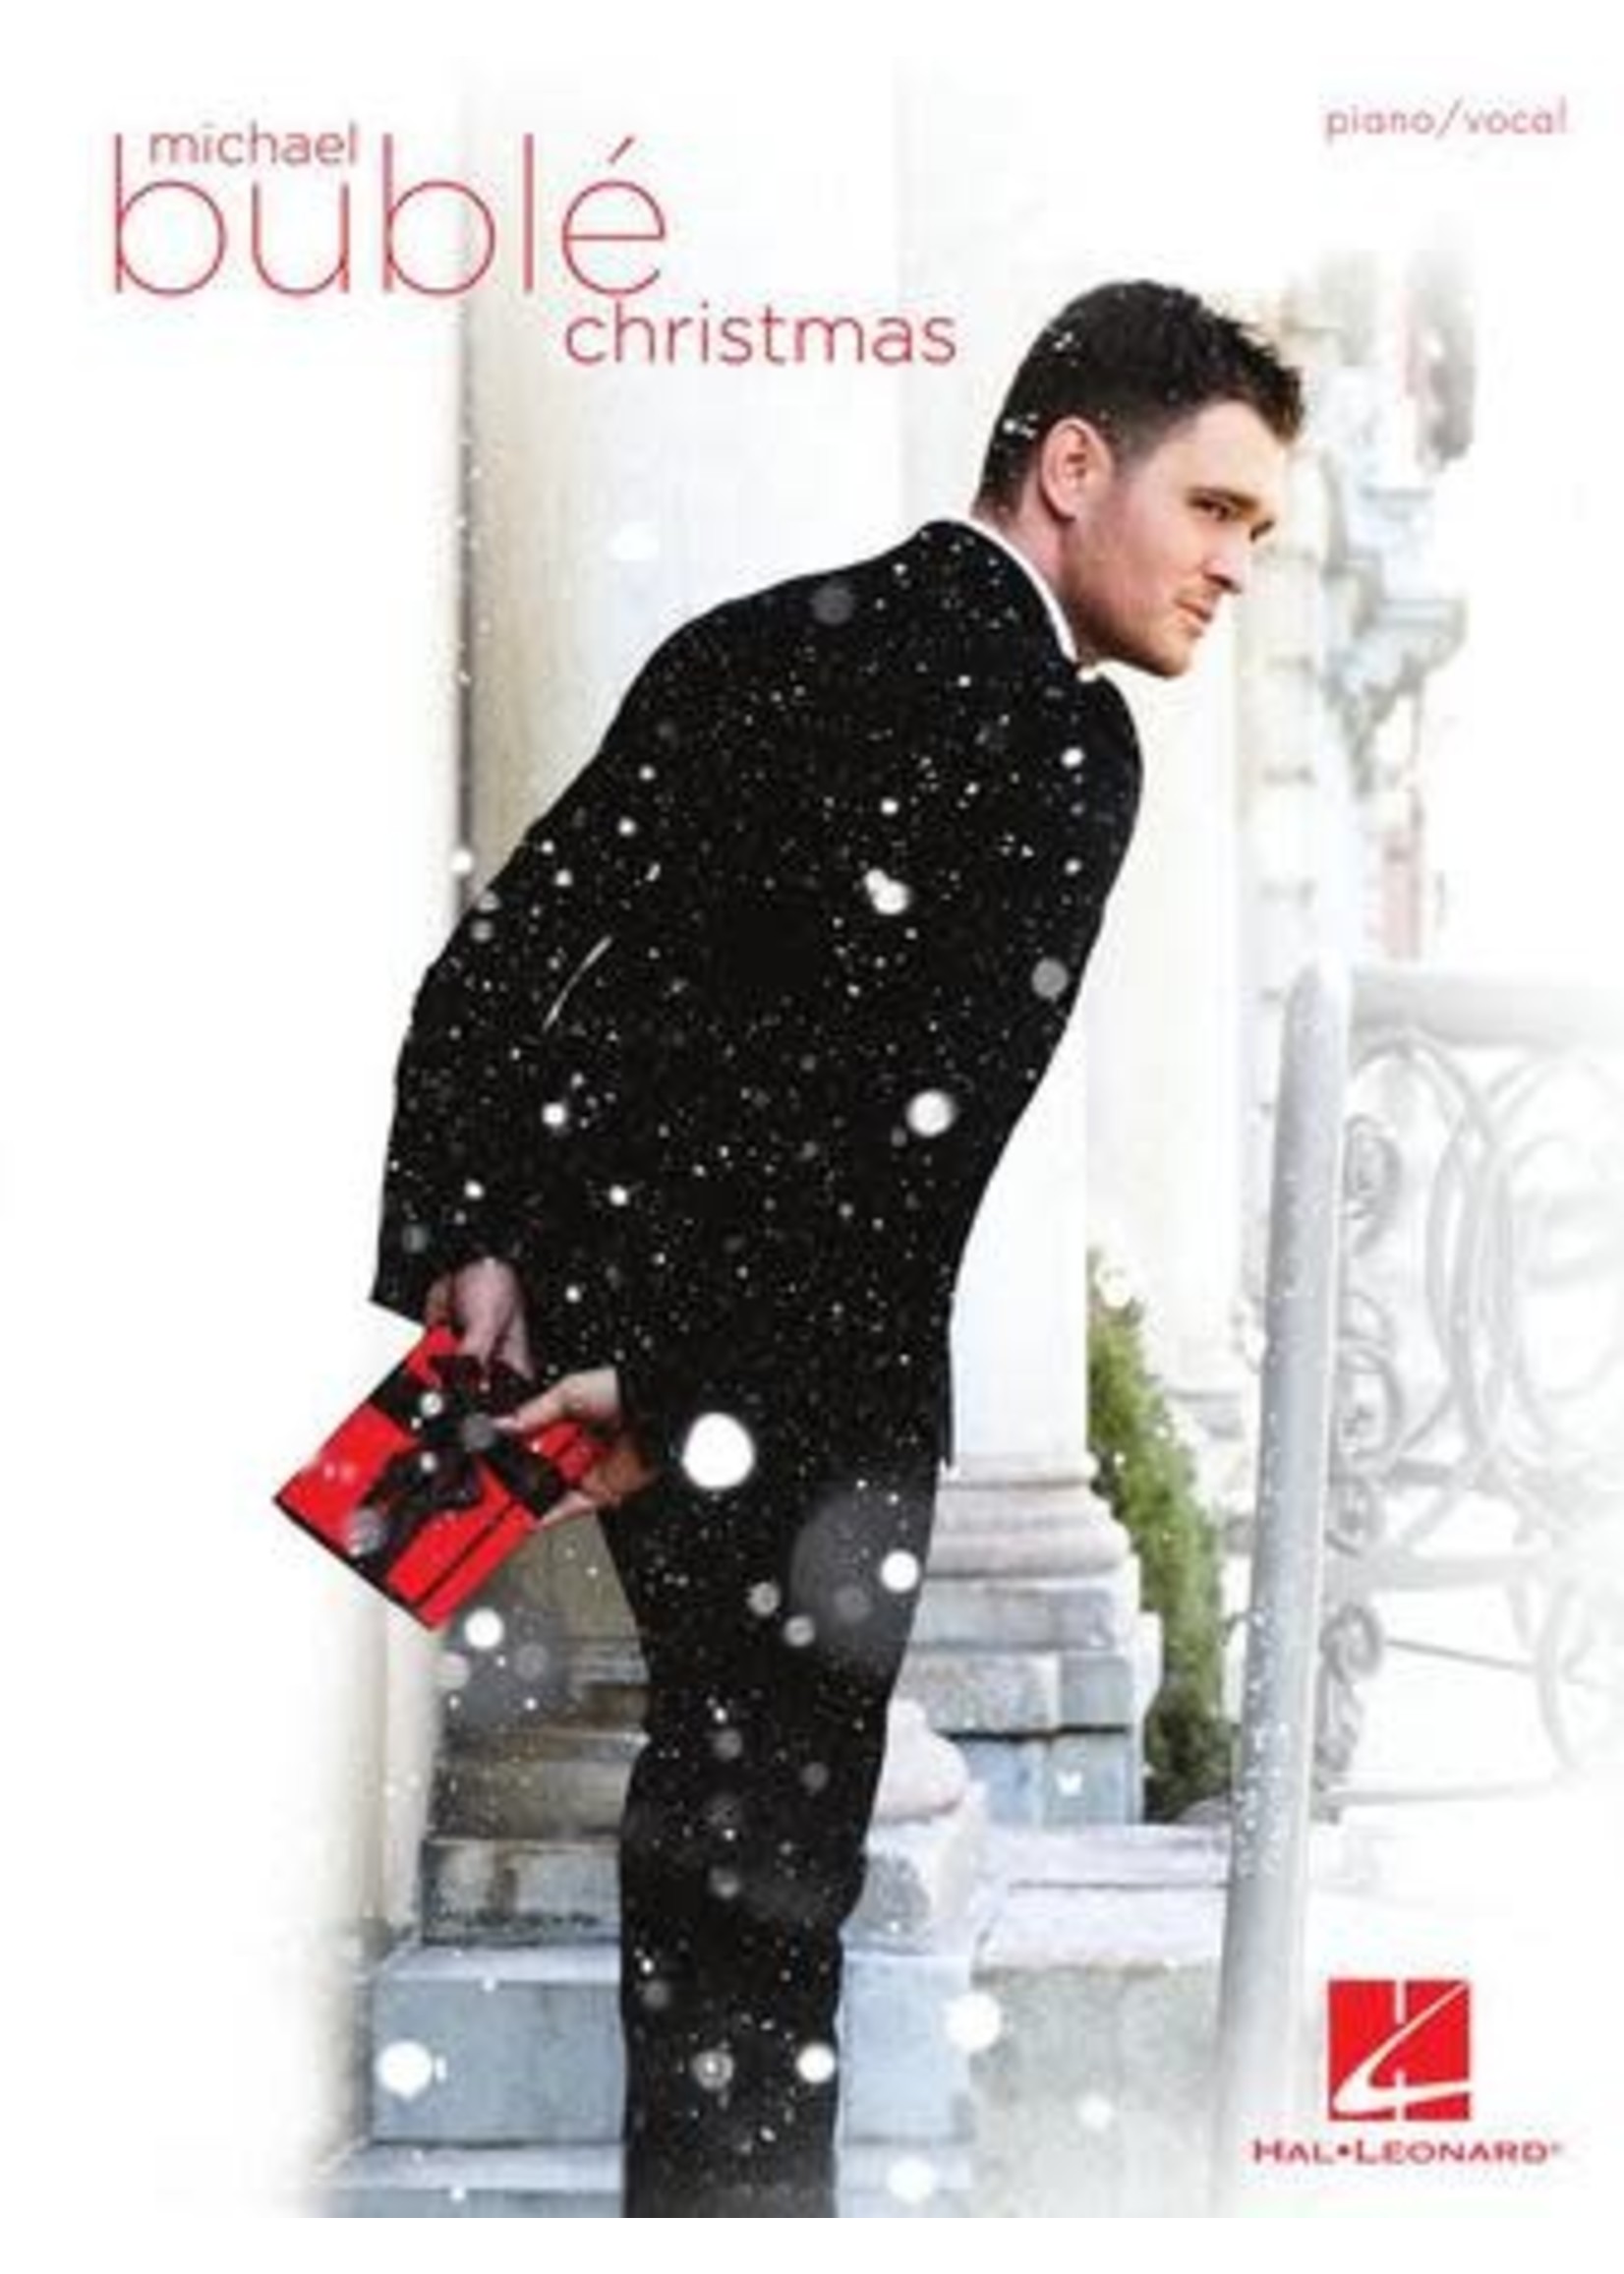 Hal Leonard Michael Buble Christmas P/V